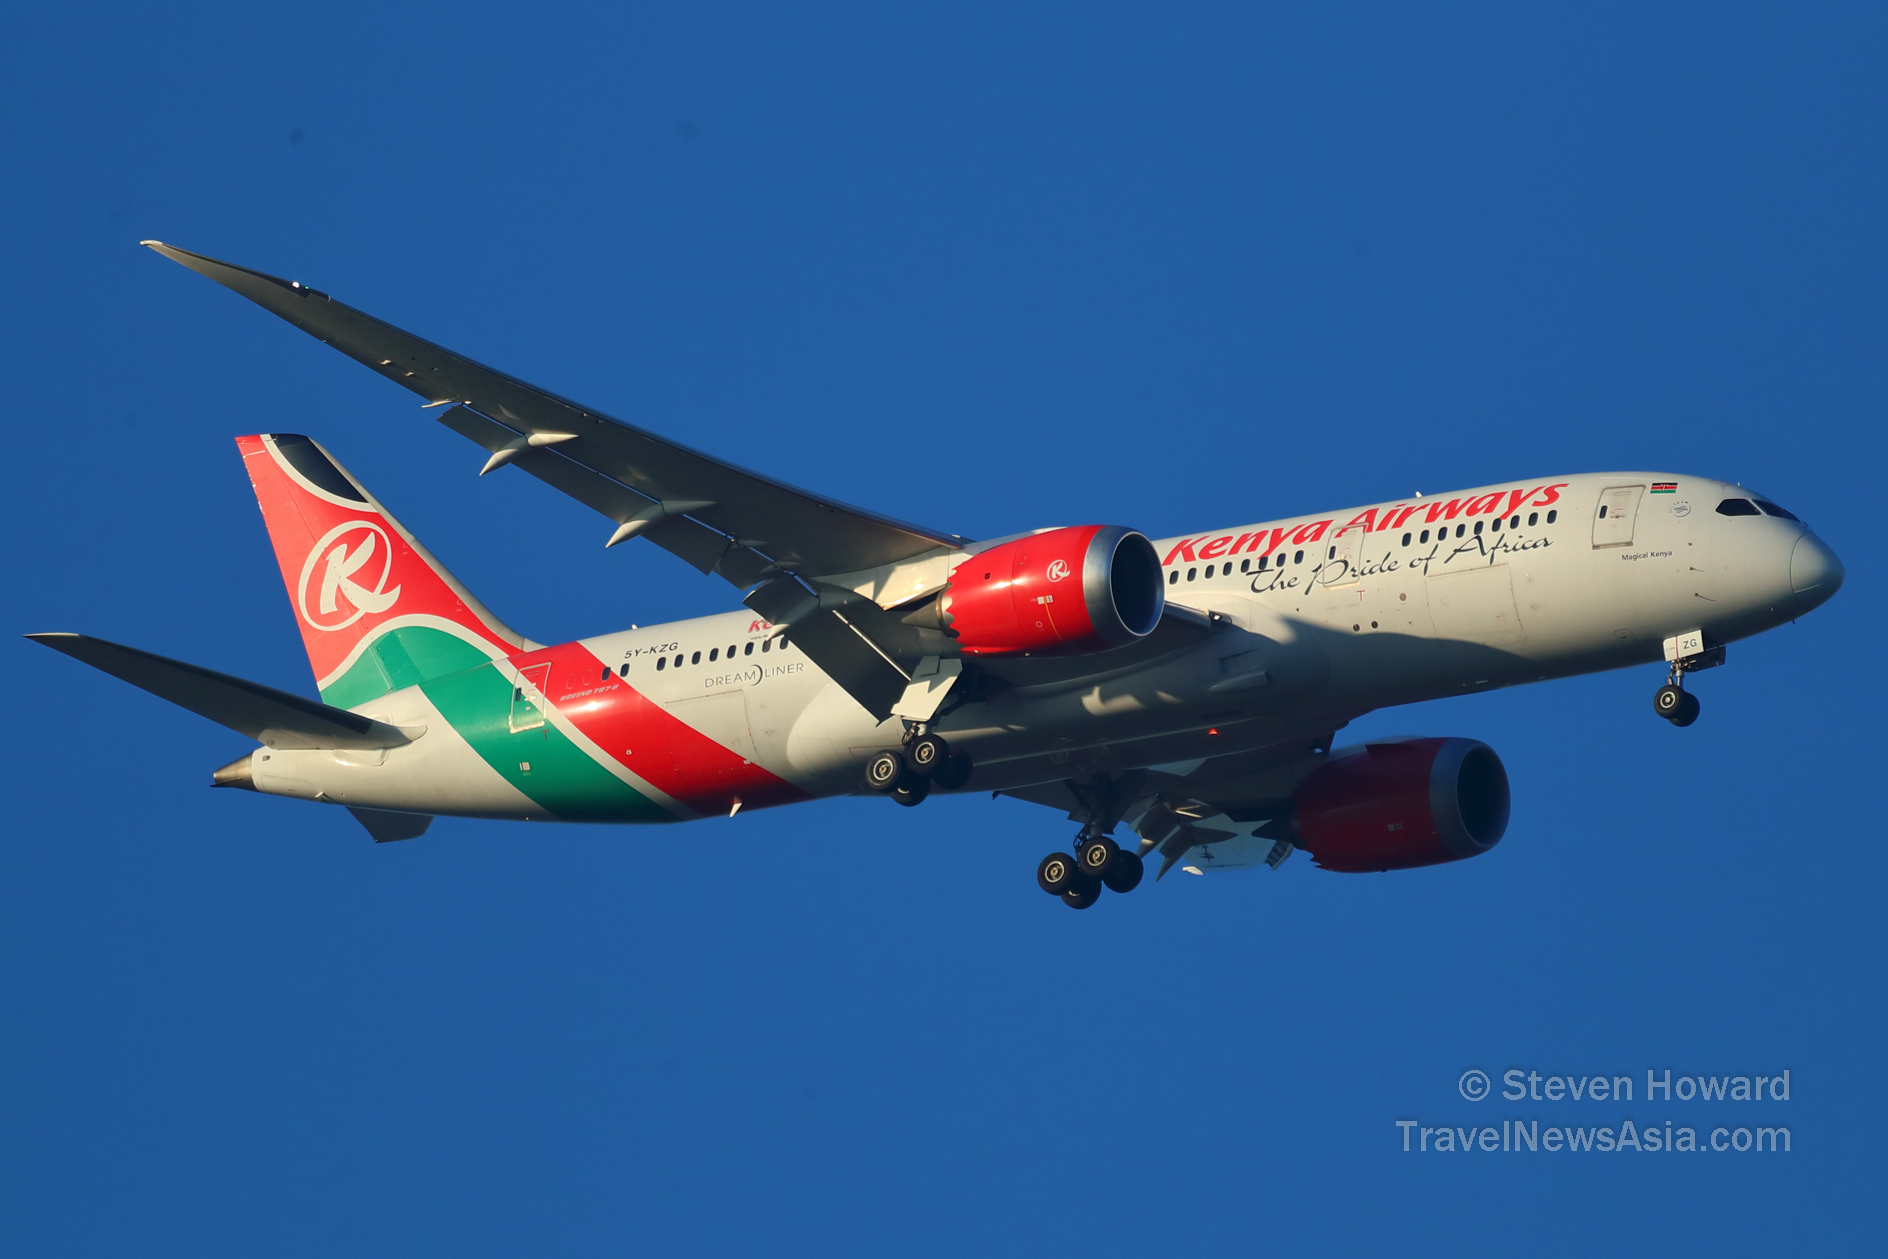 Emirates and Kenya Airways Sign Interline Agreement